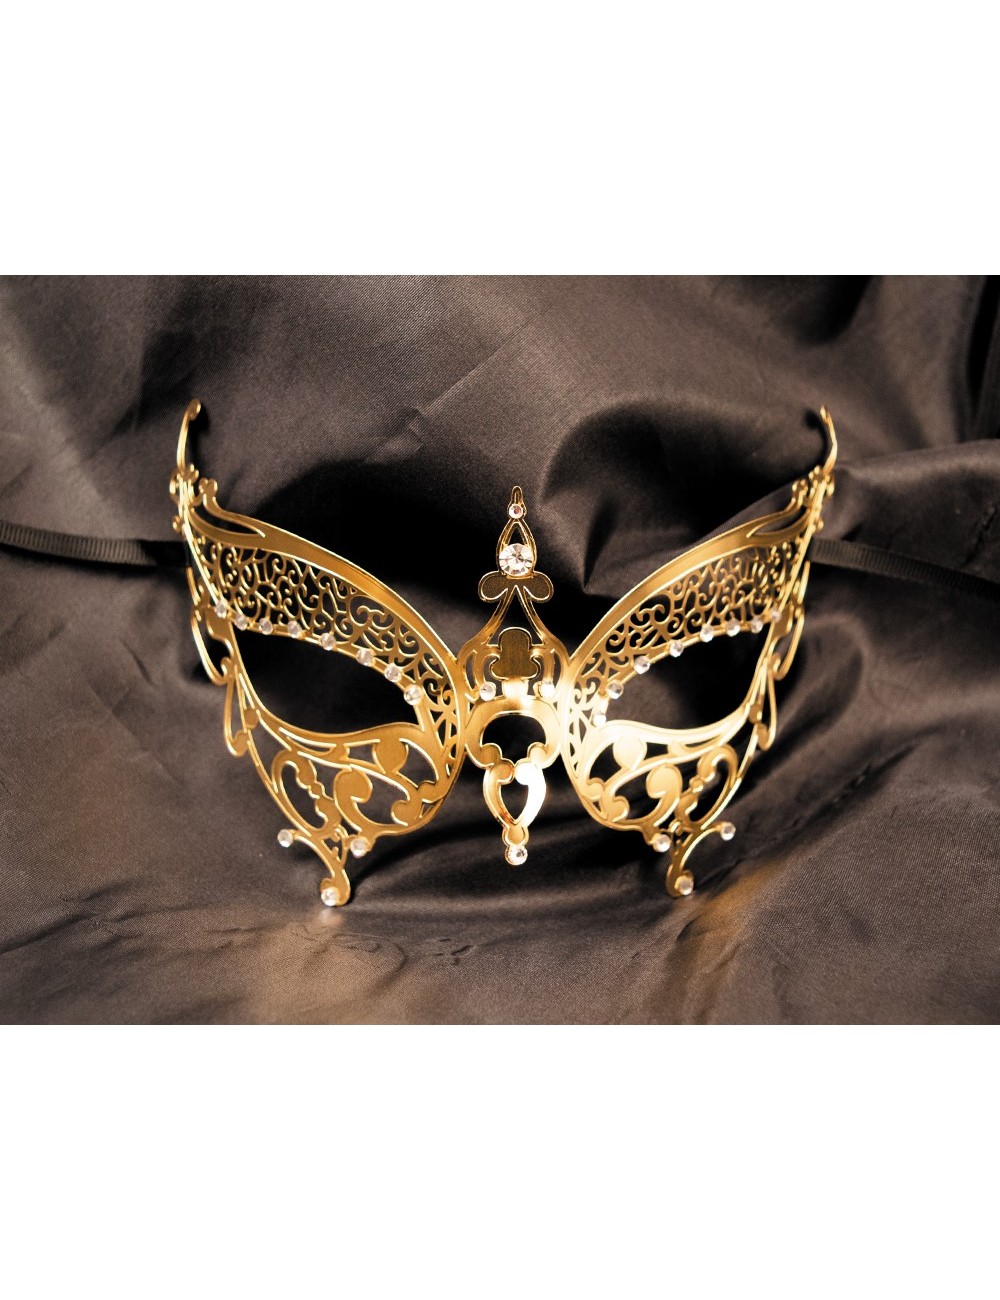 Masque vénitien Alida rigide doré avec strass - HMJ-026B